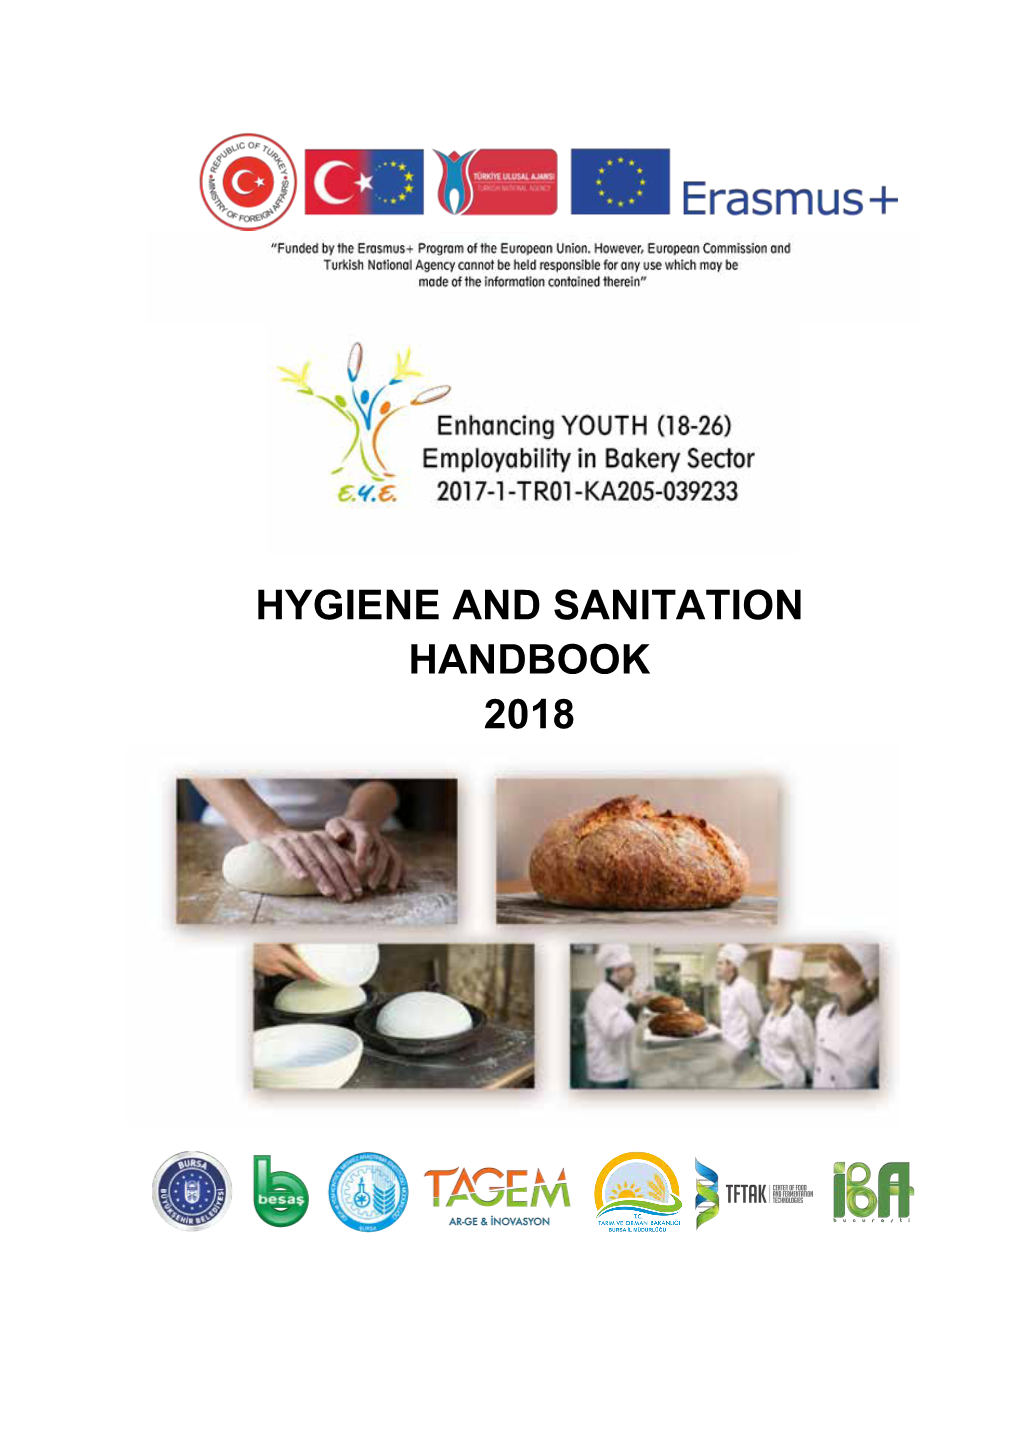 Hygiene and Sanitation Handbook 2018